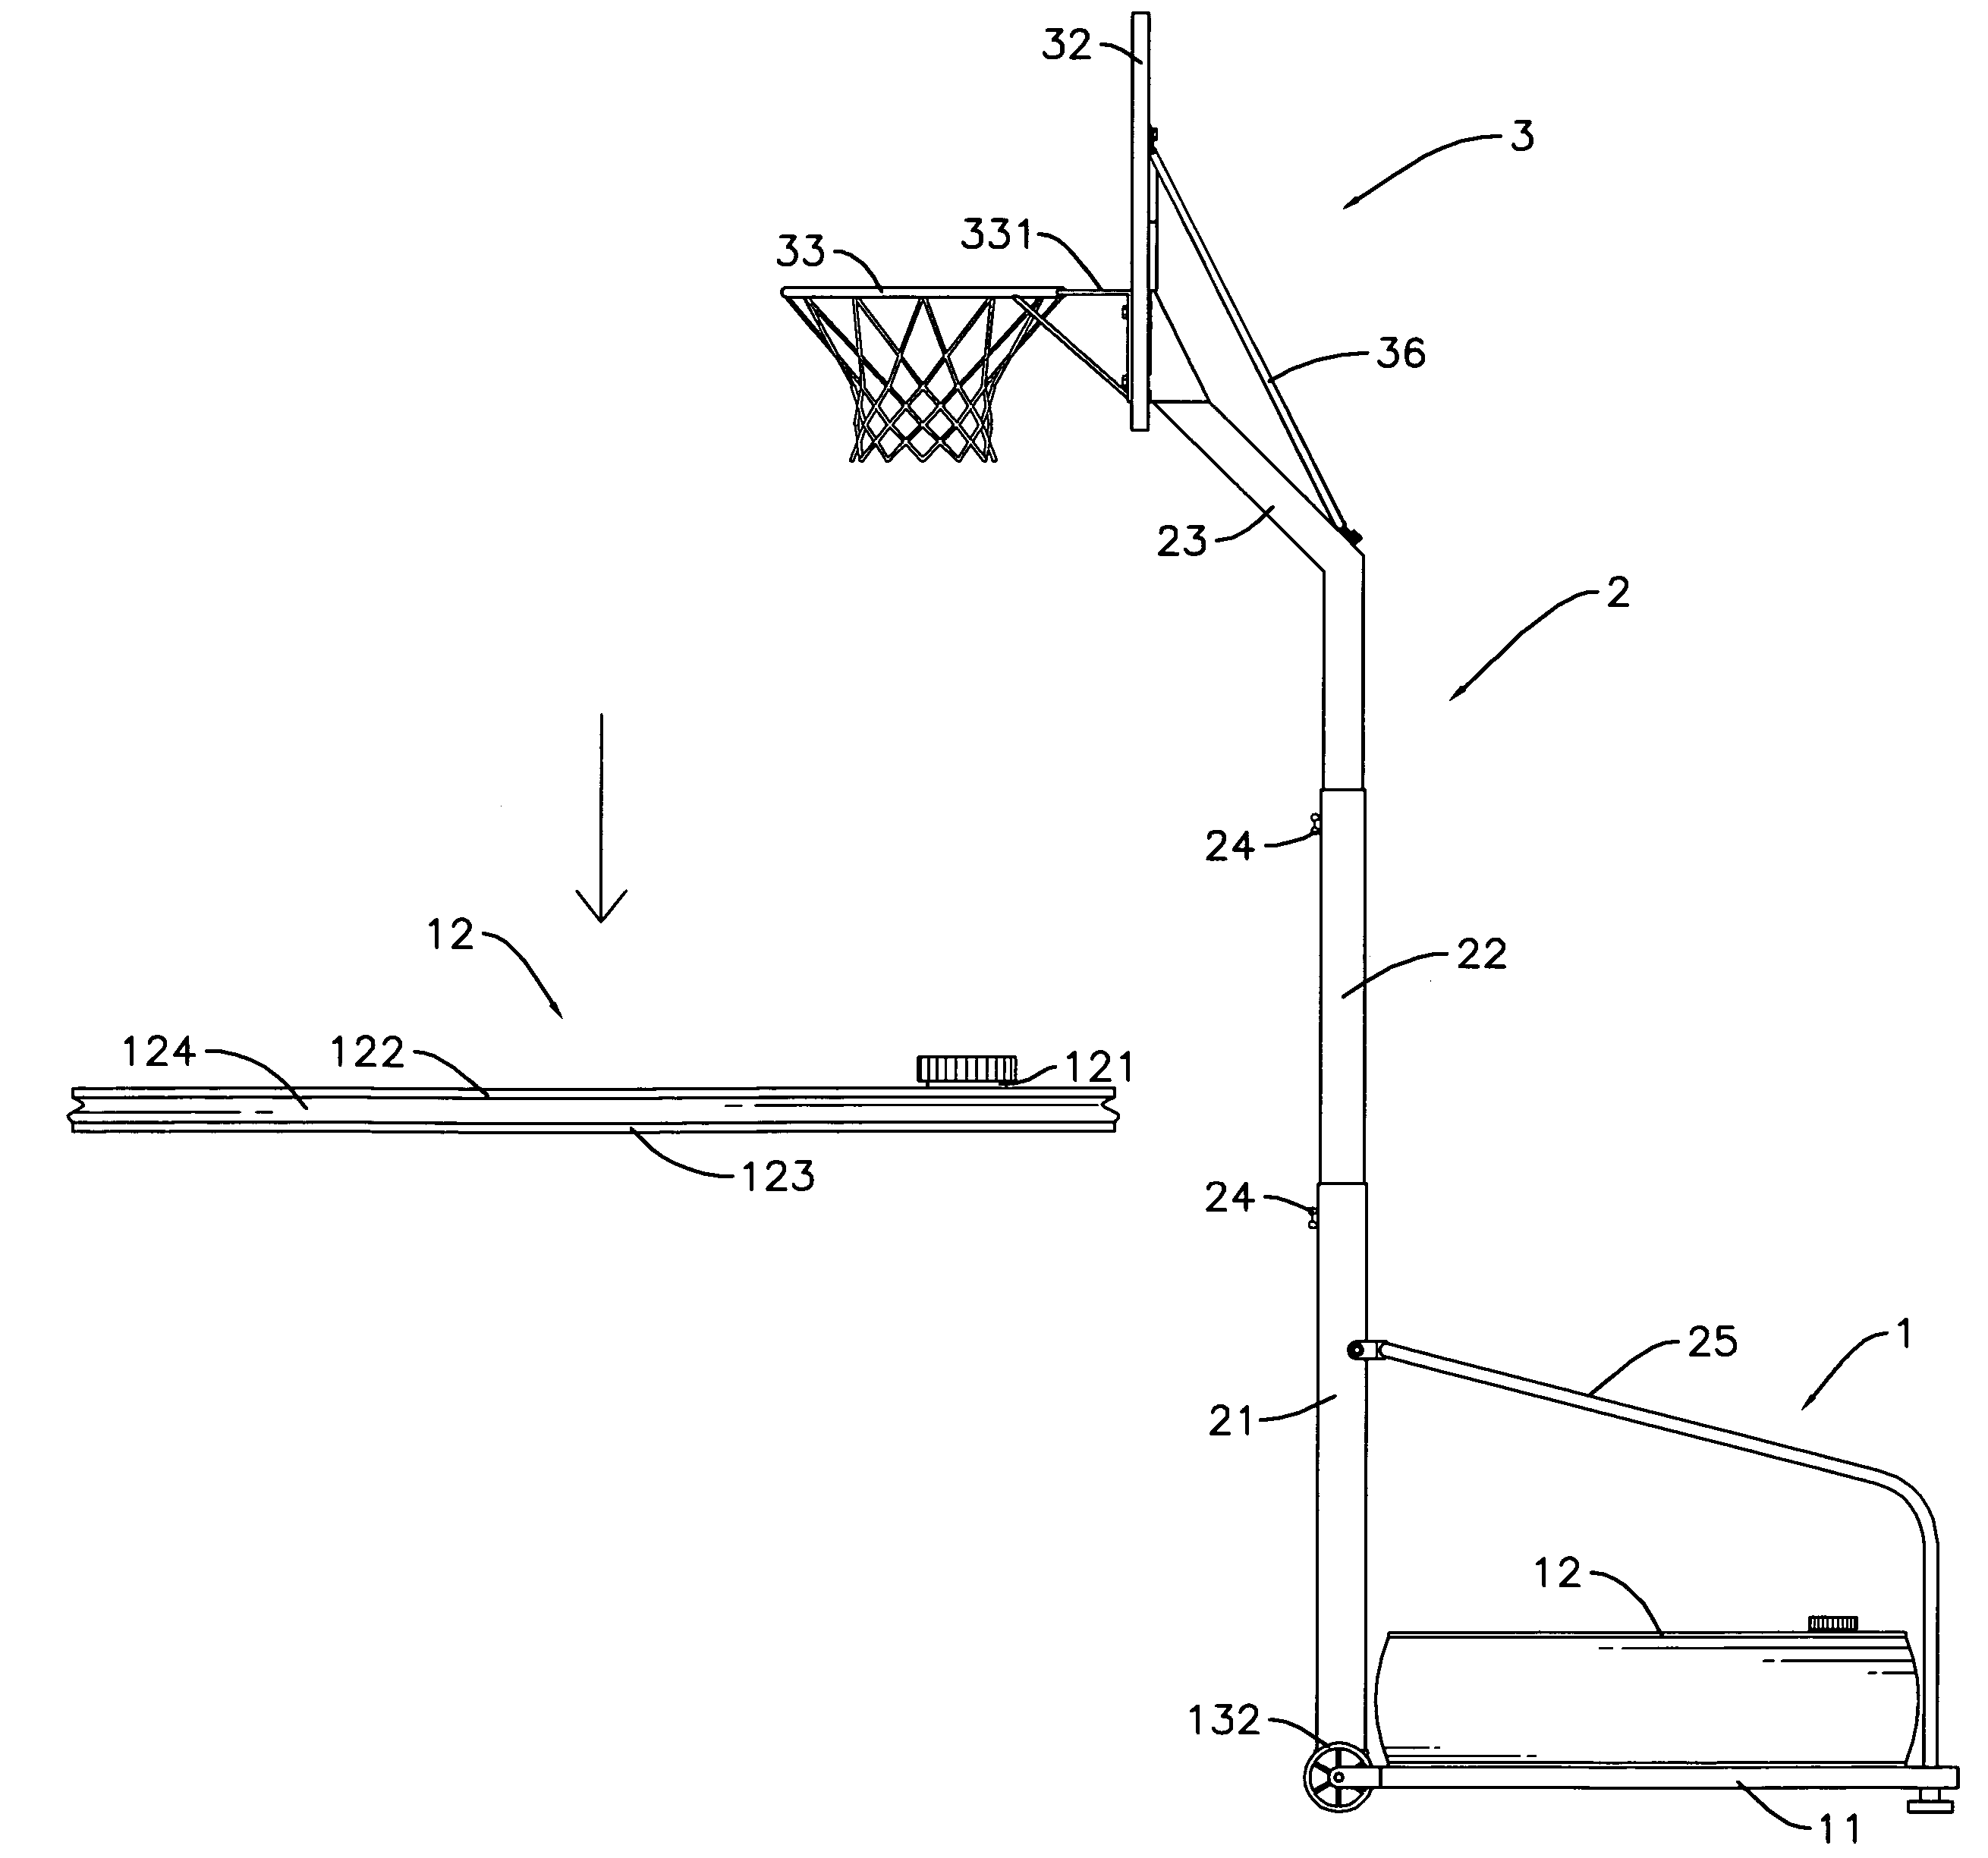 Foldable basketball stand